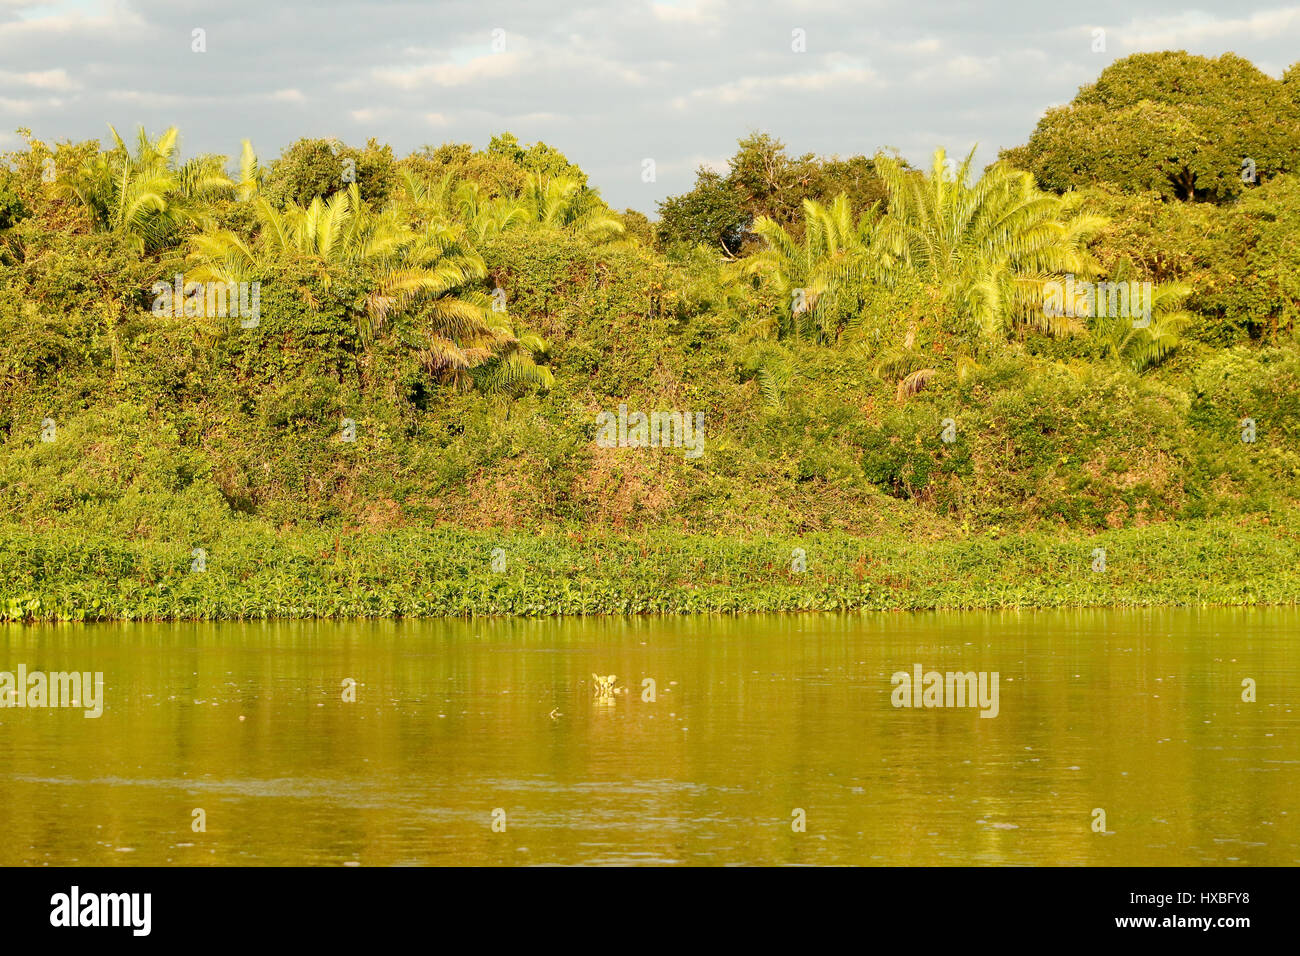 Lever du soleil sur les rives de la rivière La rivière Cuiaba Cuiaba dans la région du Pantanal, Mato Grosso, Brésil, Amérique du Sud. Arbre racines aériennes suspendues Banque D'Images